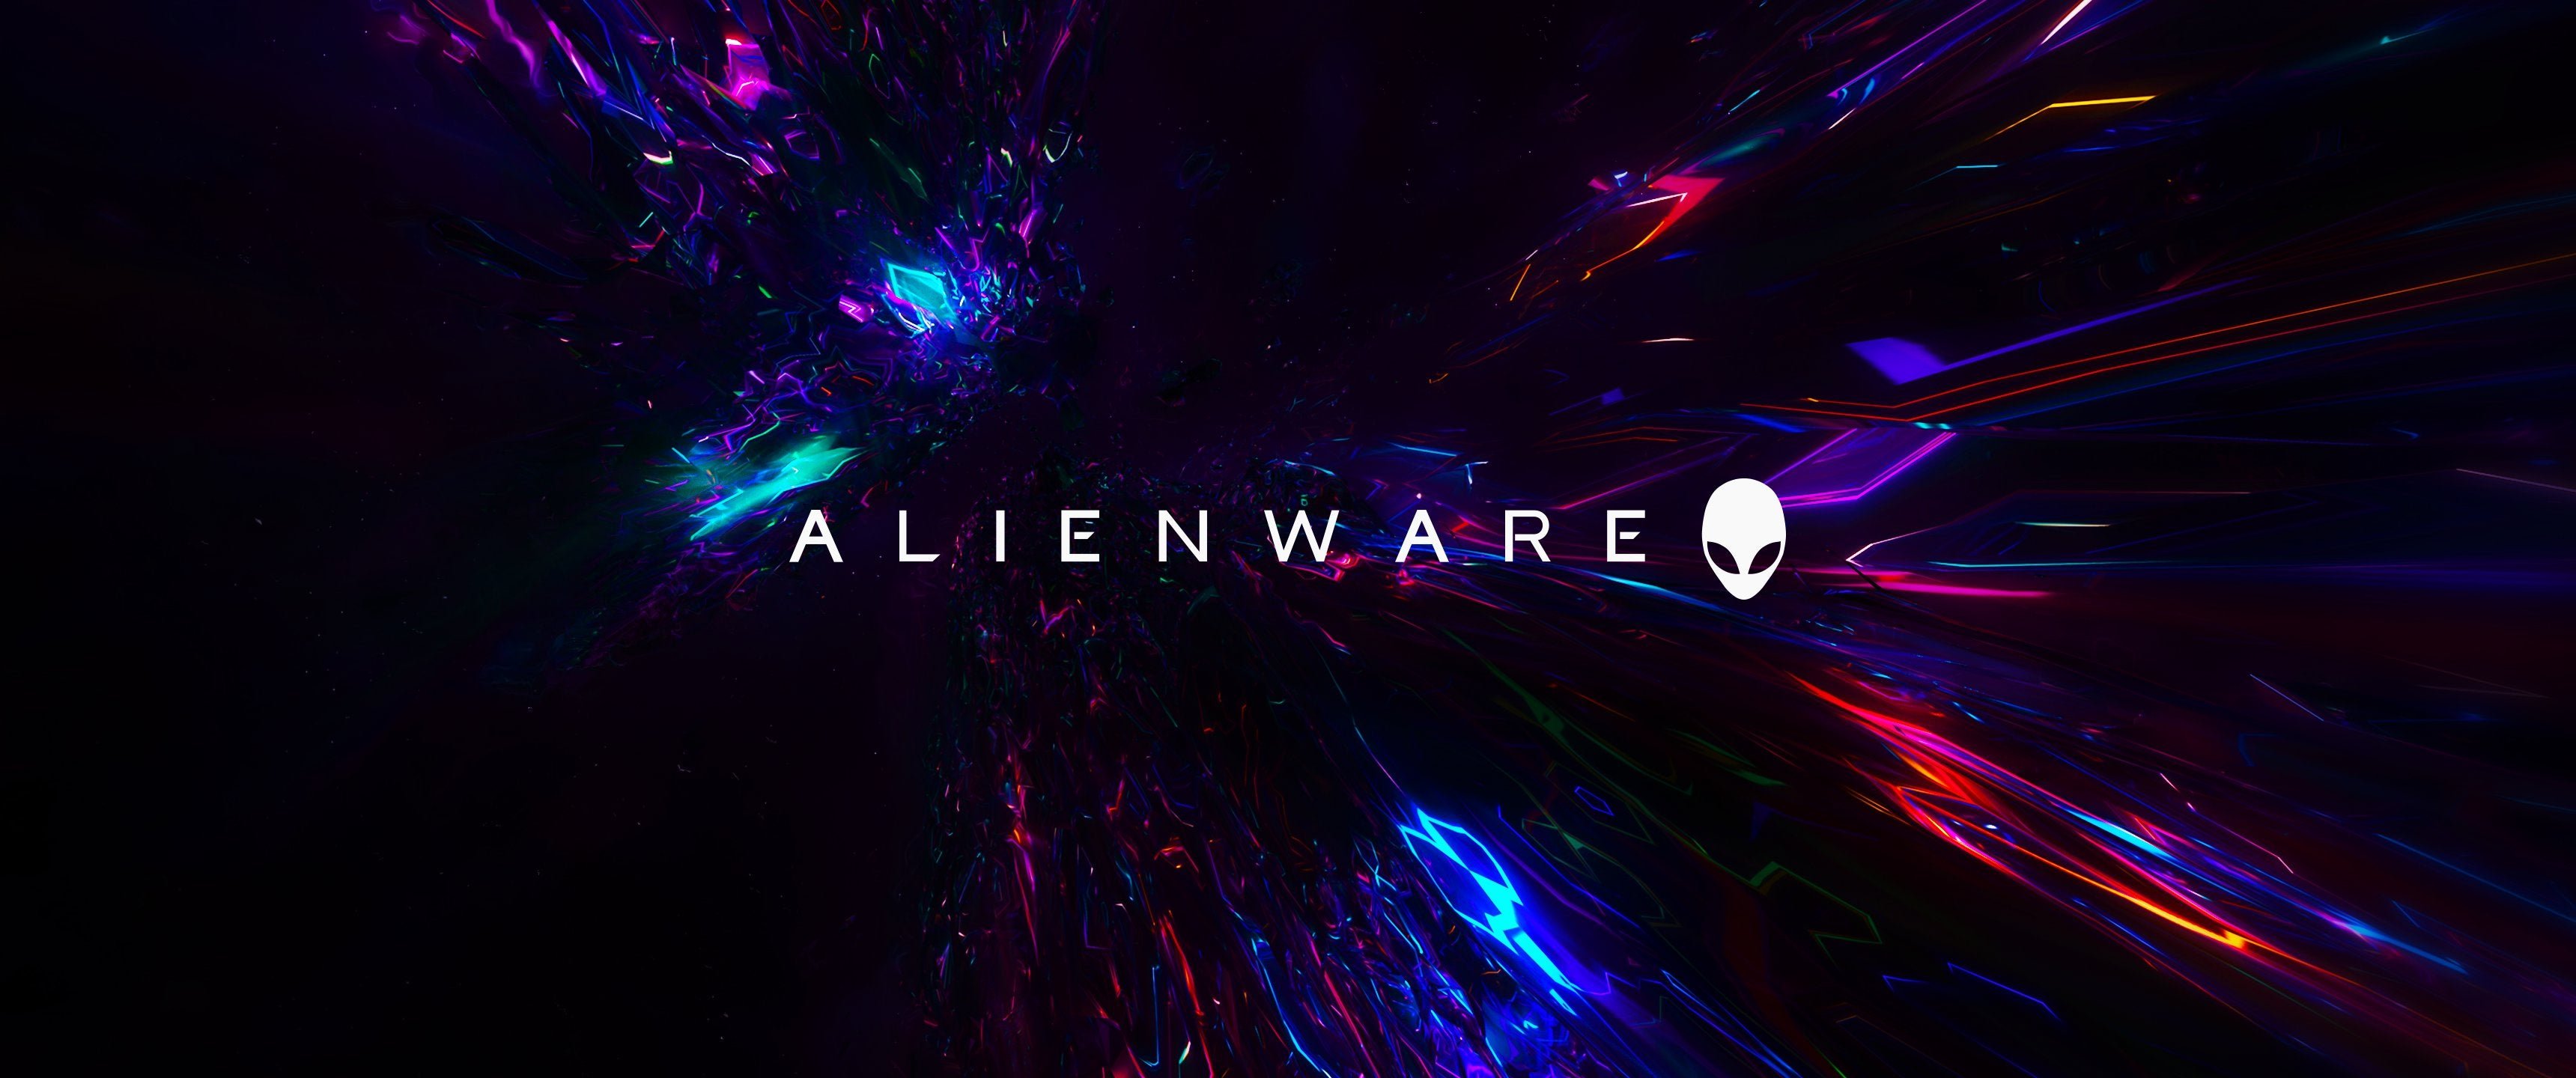 Alienware Ultrawide 3440x1440 Wallpaper